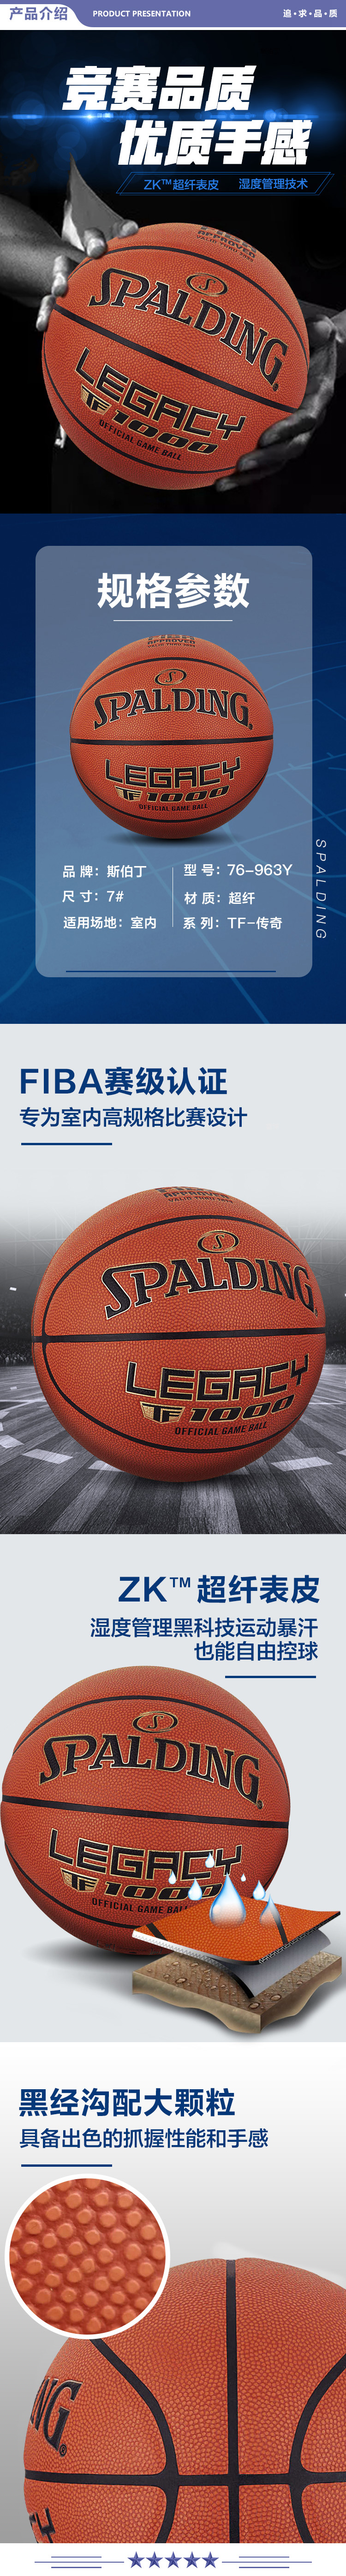 斯伯丁 76-963Y SPALDING传奇FIBA超纤篮球TF-1000赛事比赛7号篮球室内7号球 2.jpg